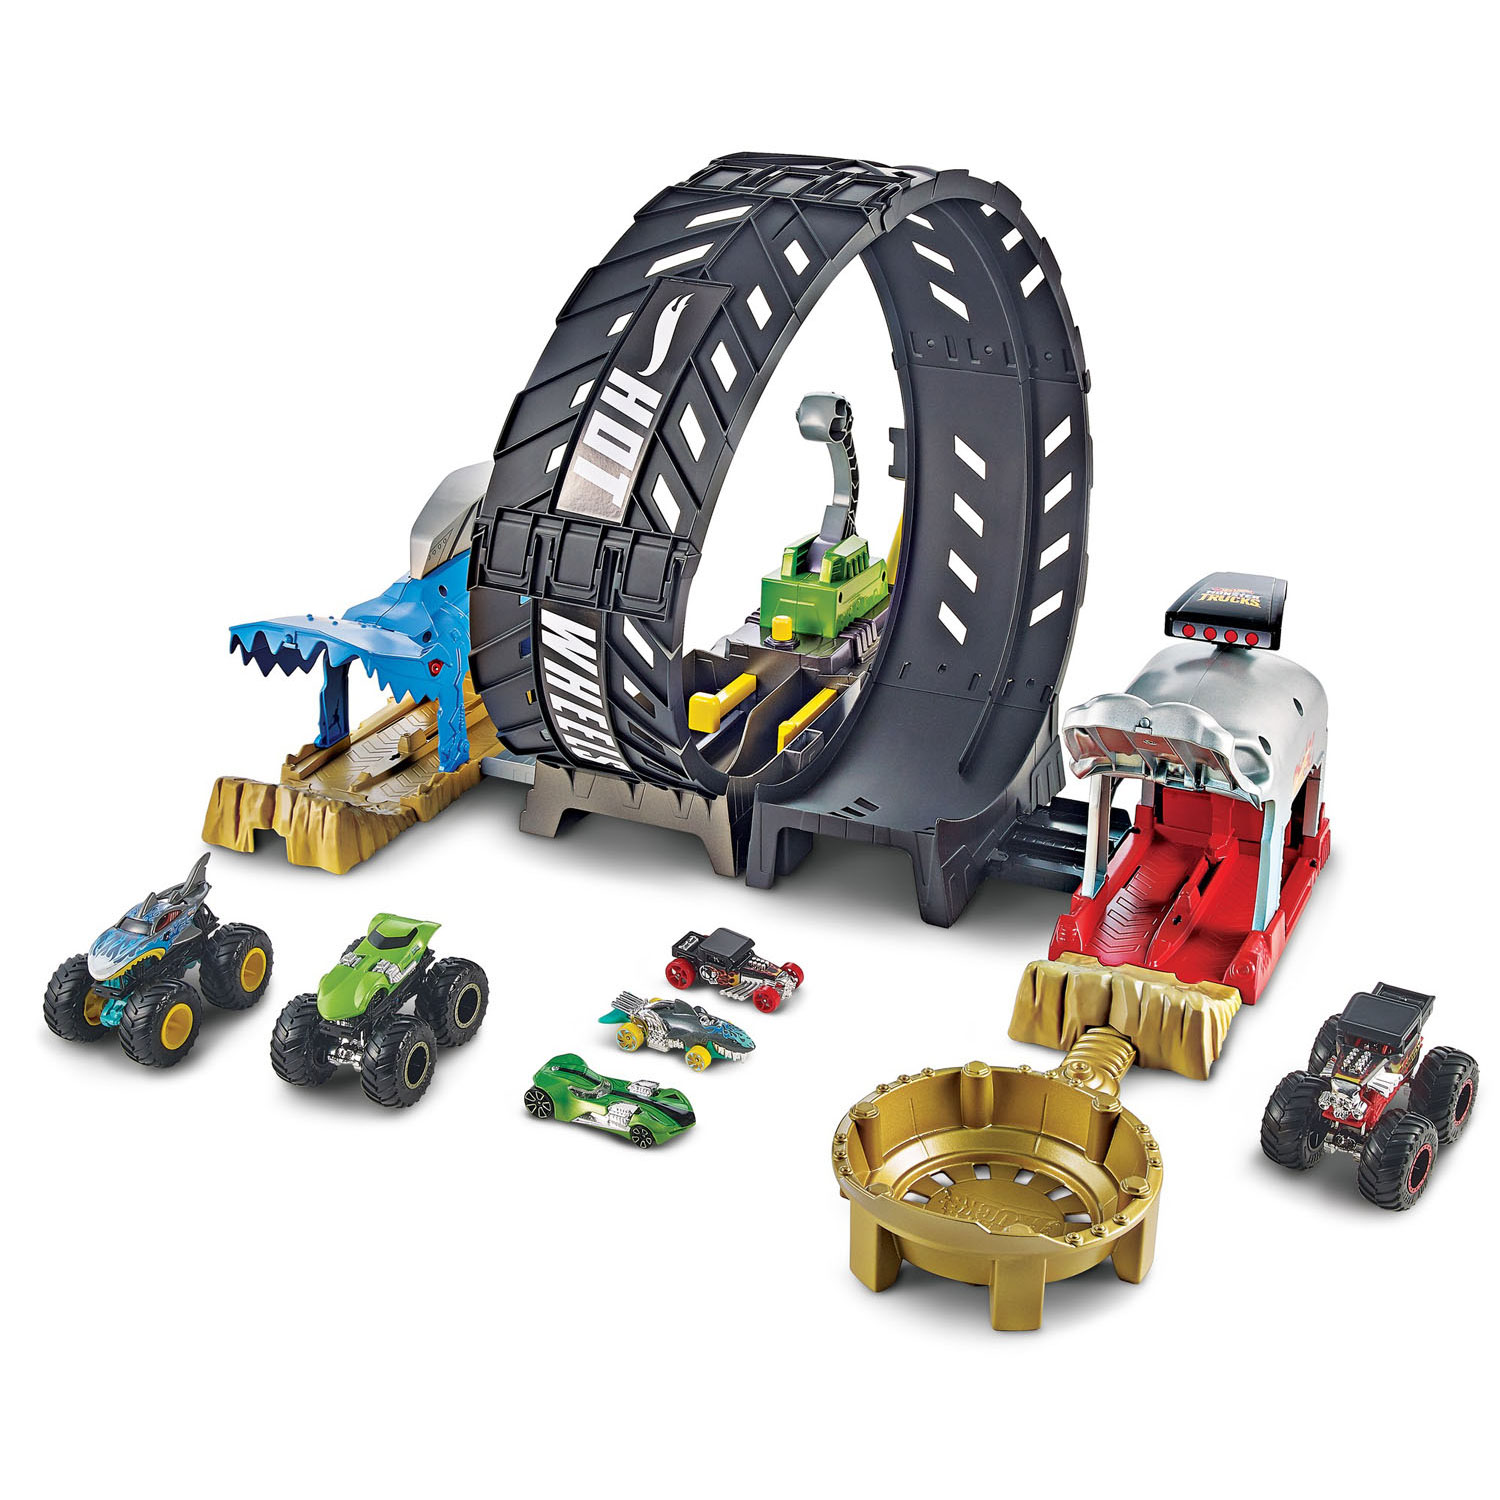 Hot Wheels Monster Trucks Arena World Wholesale